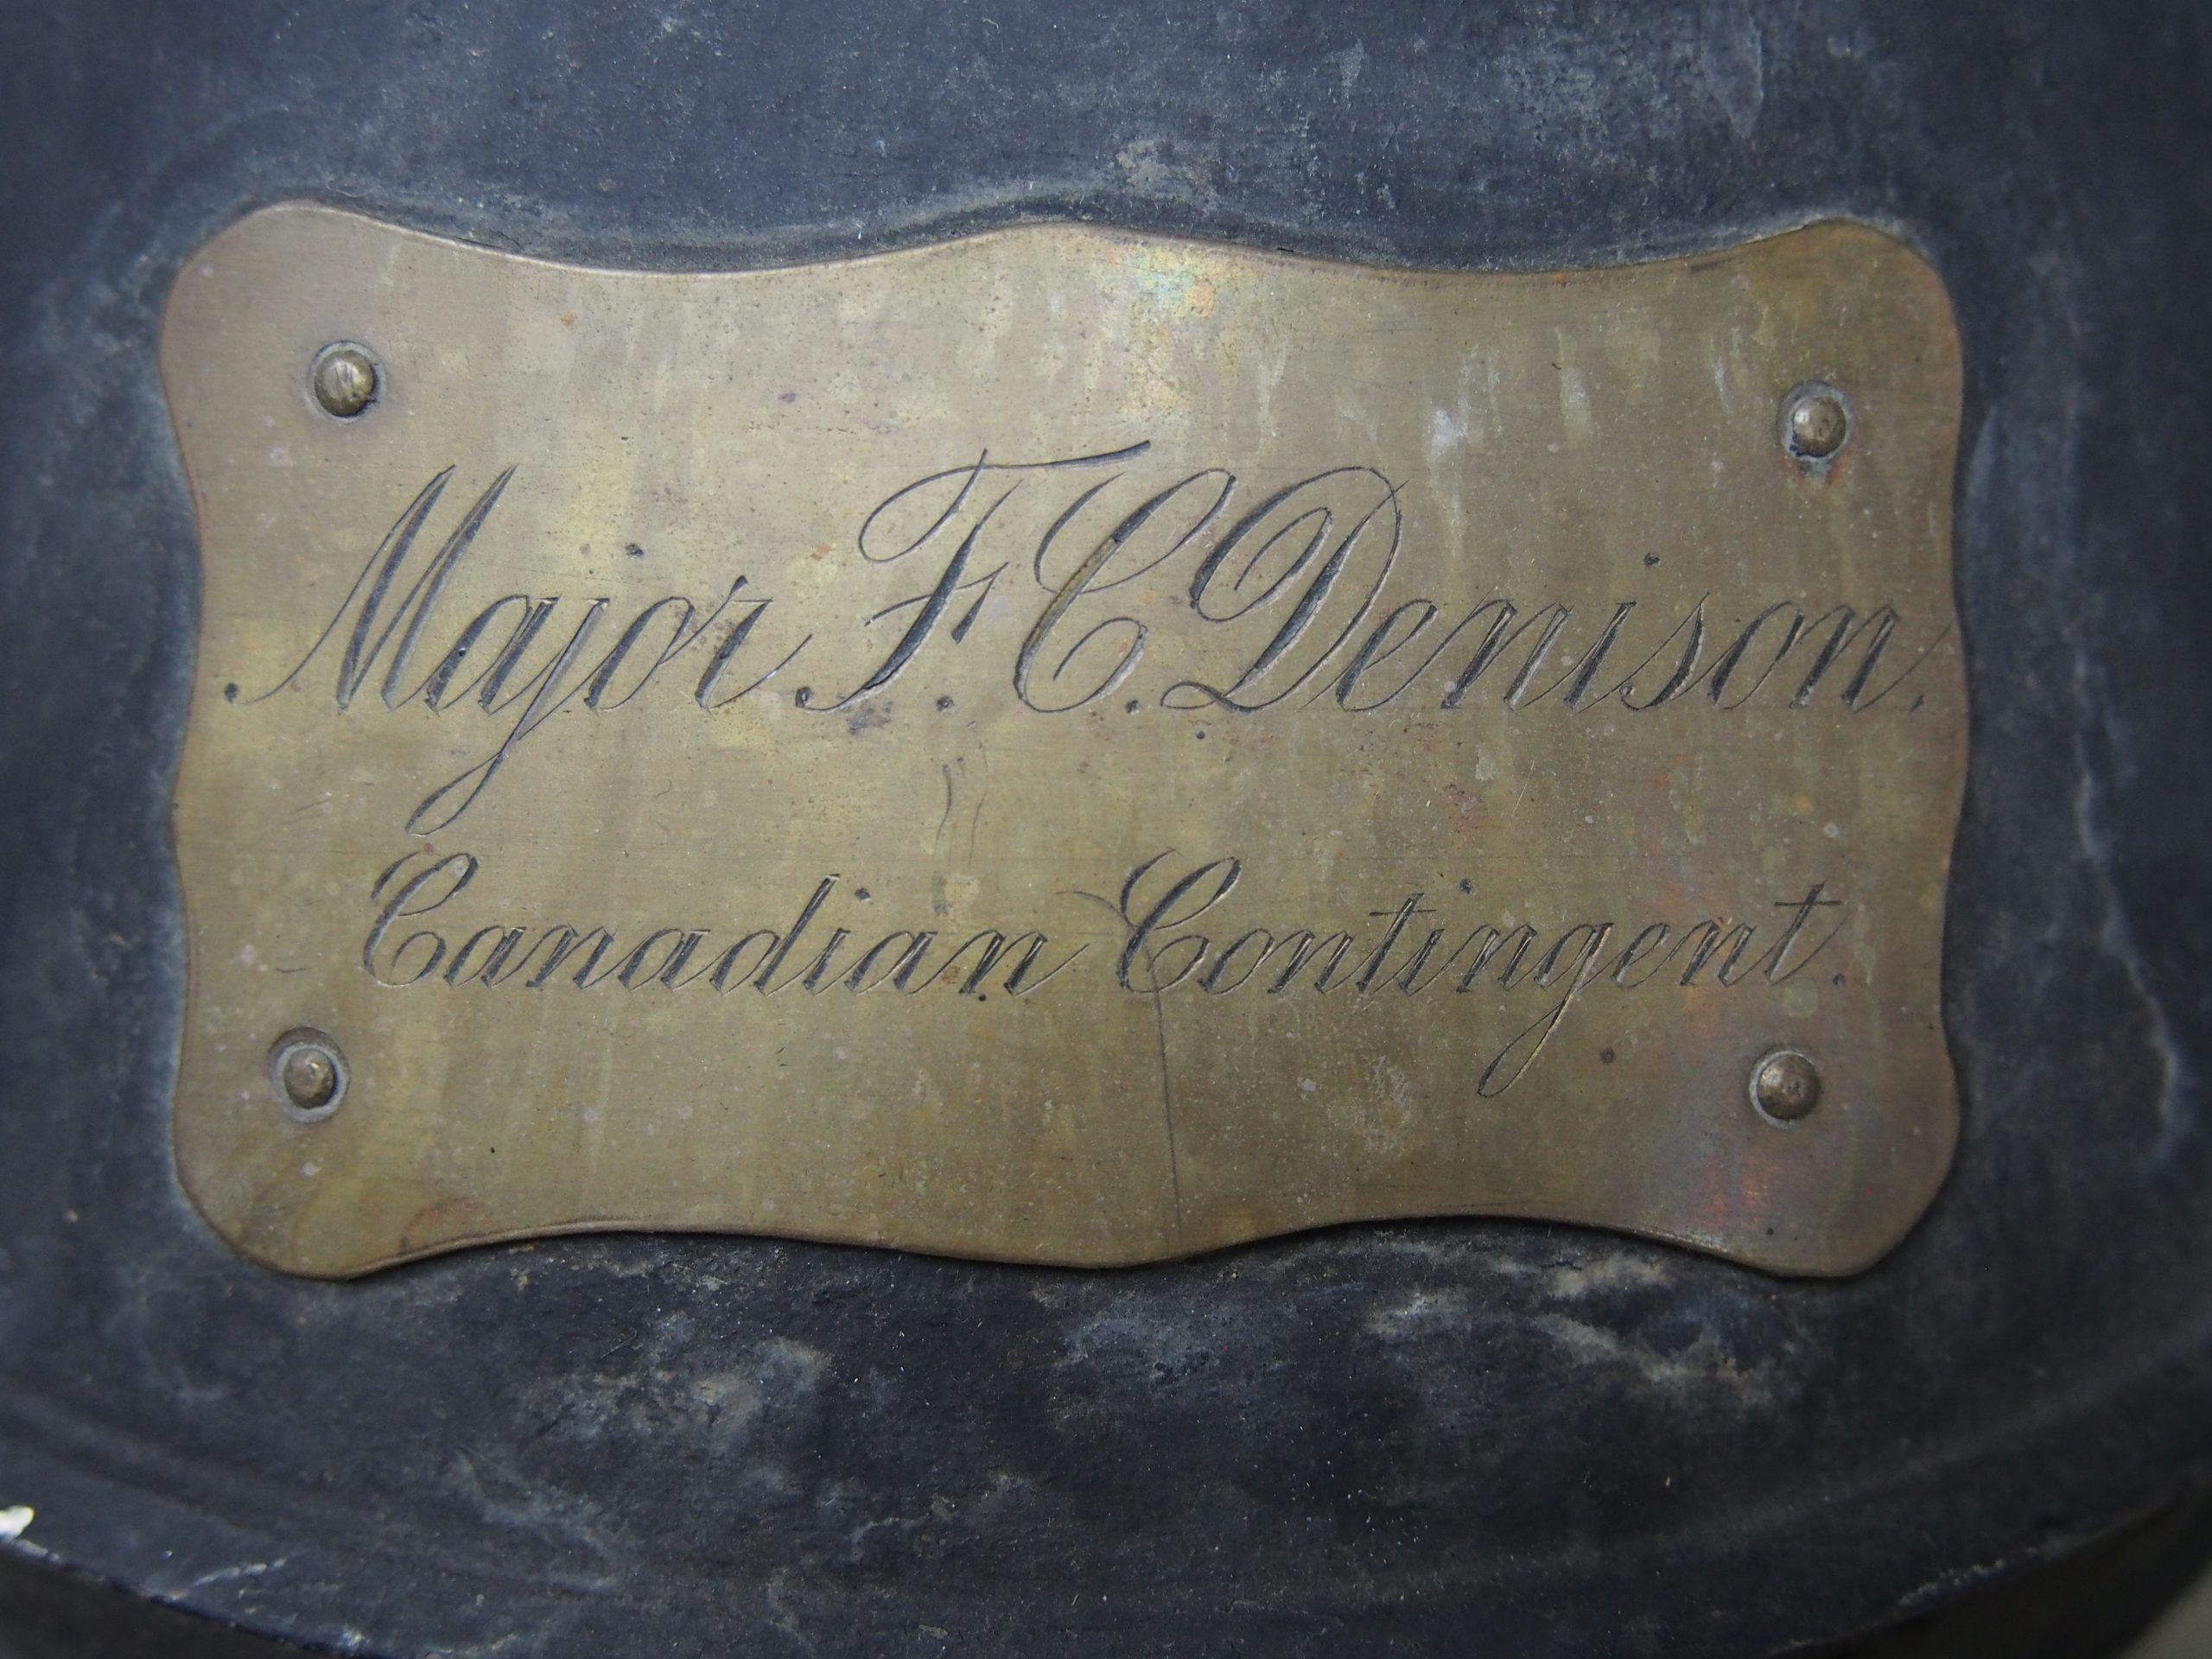 Name plate on helmet